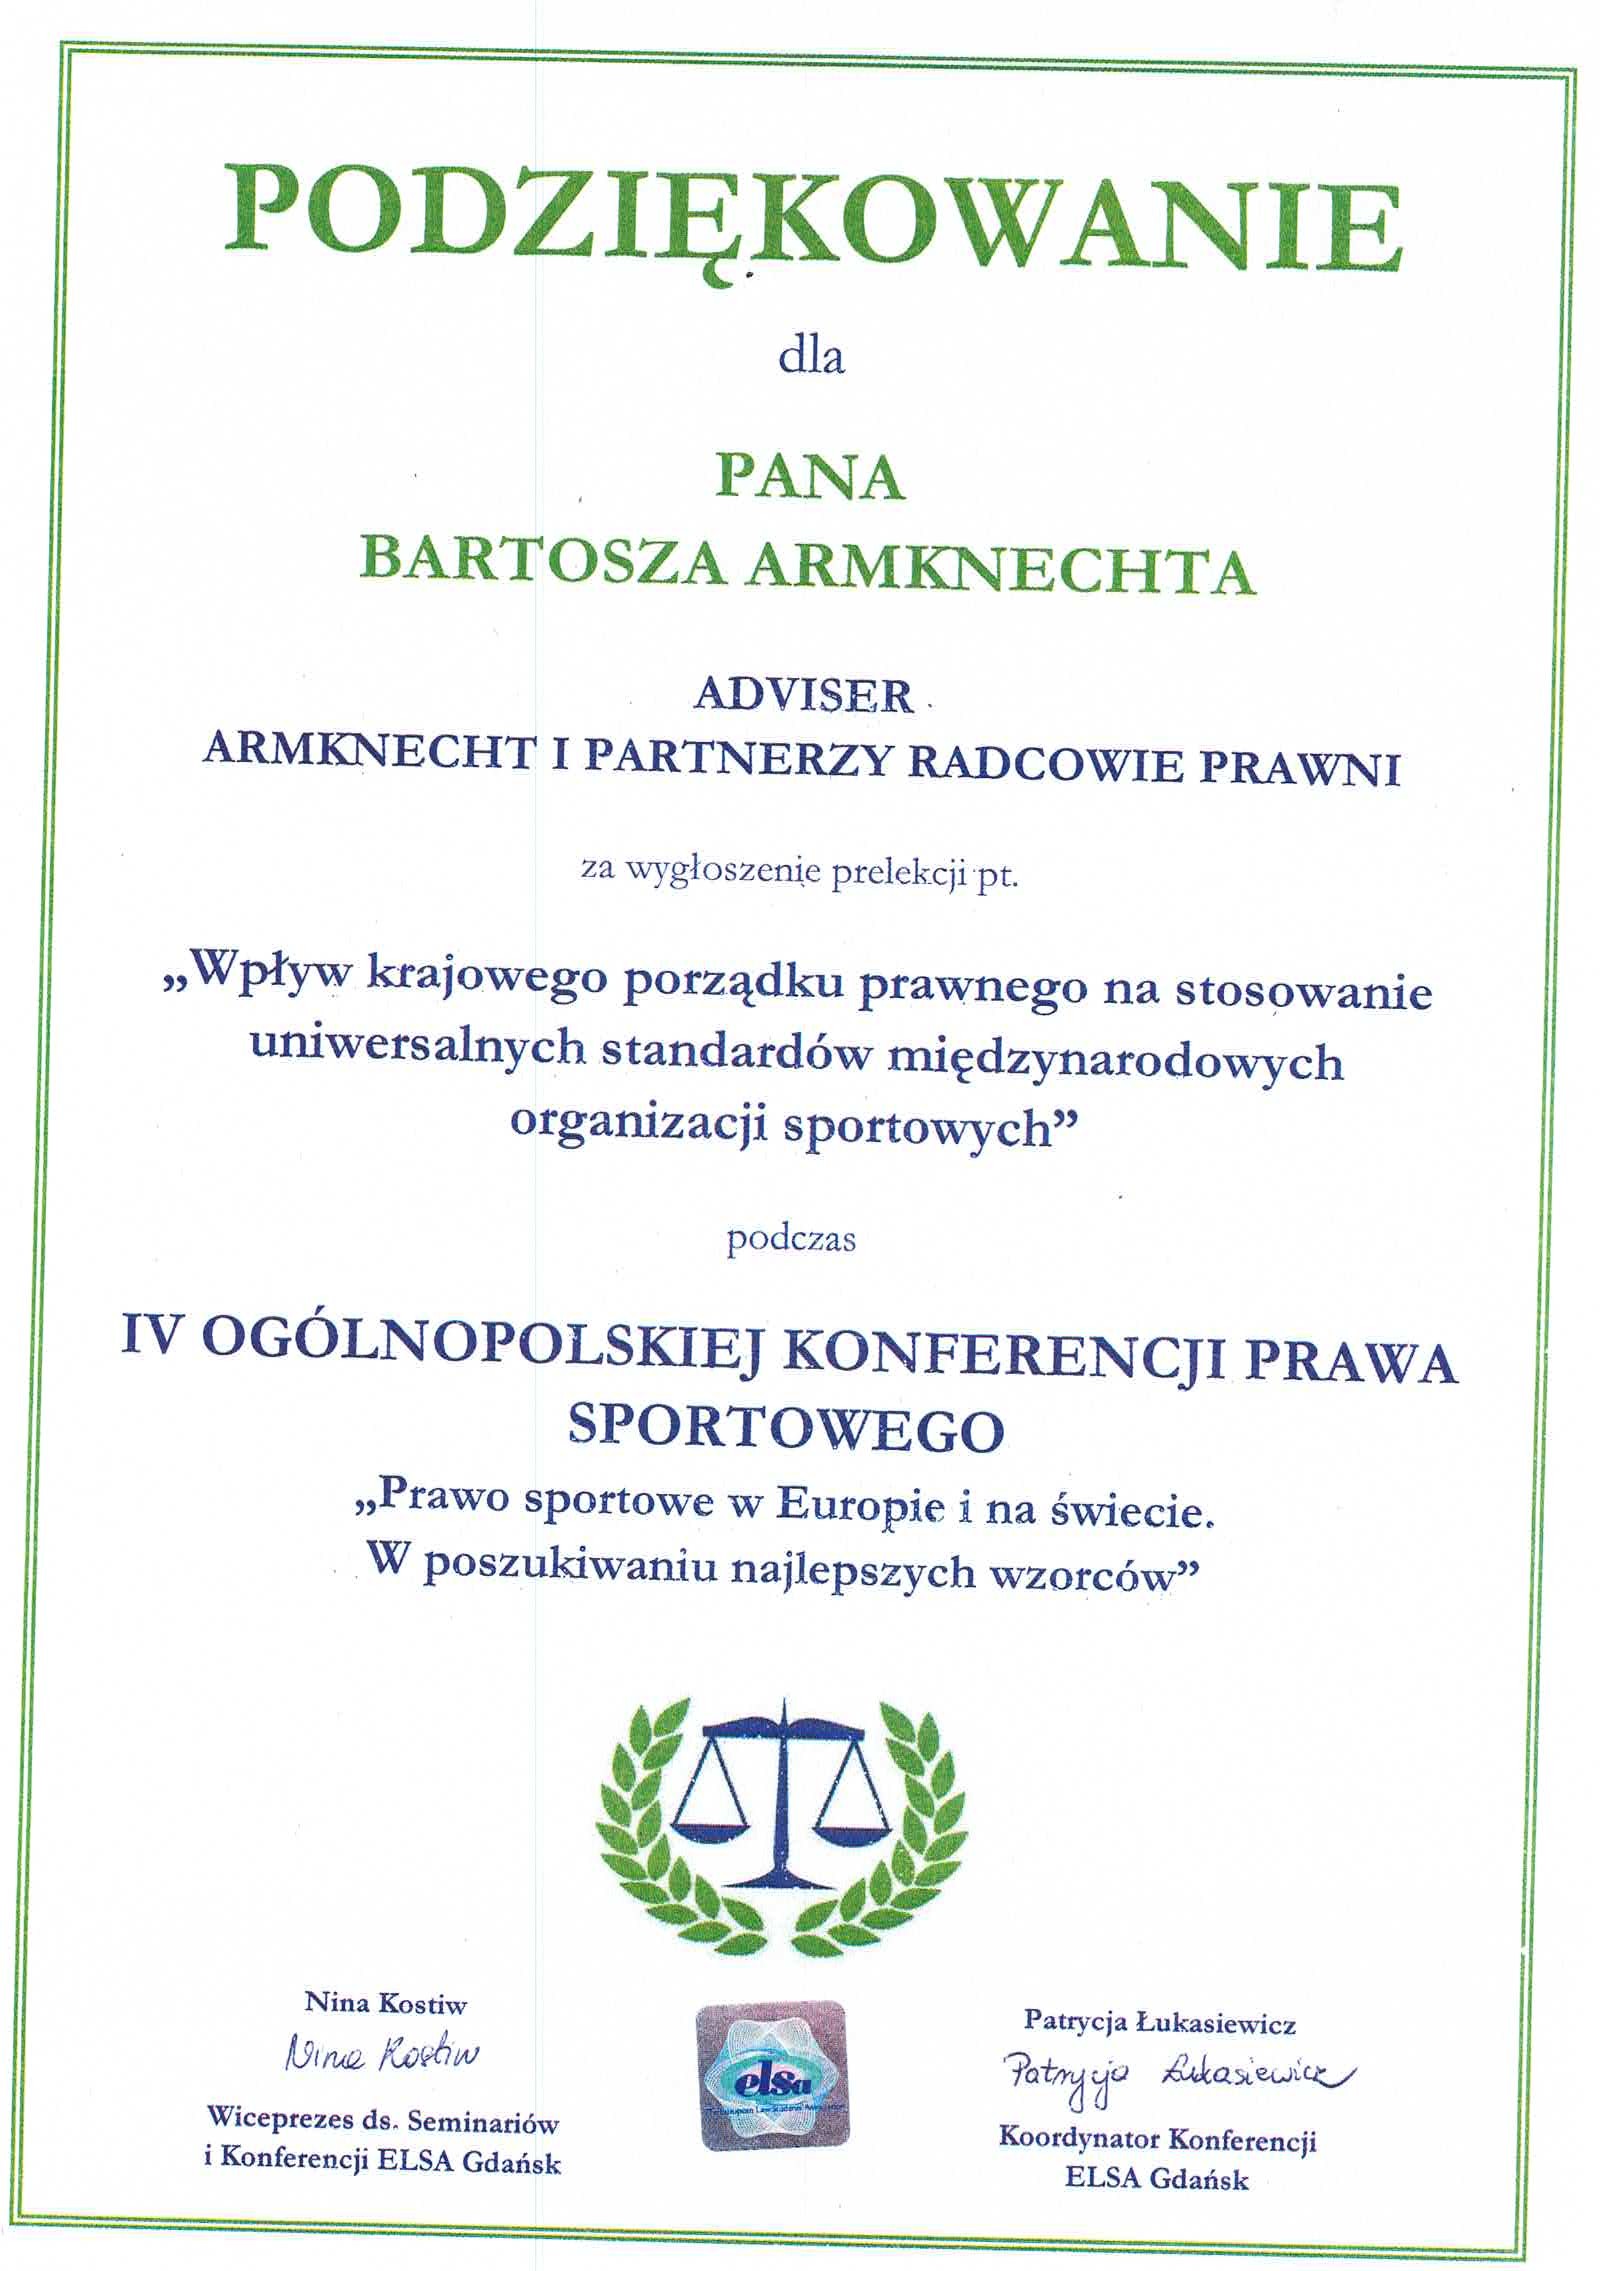 Kancelaria Prawna ADVISER Armknecht & Partners attorneys-at-law | Prawo sportowe / Sports law 